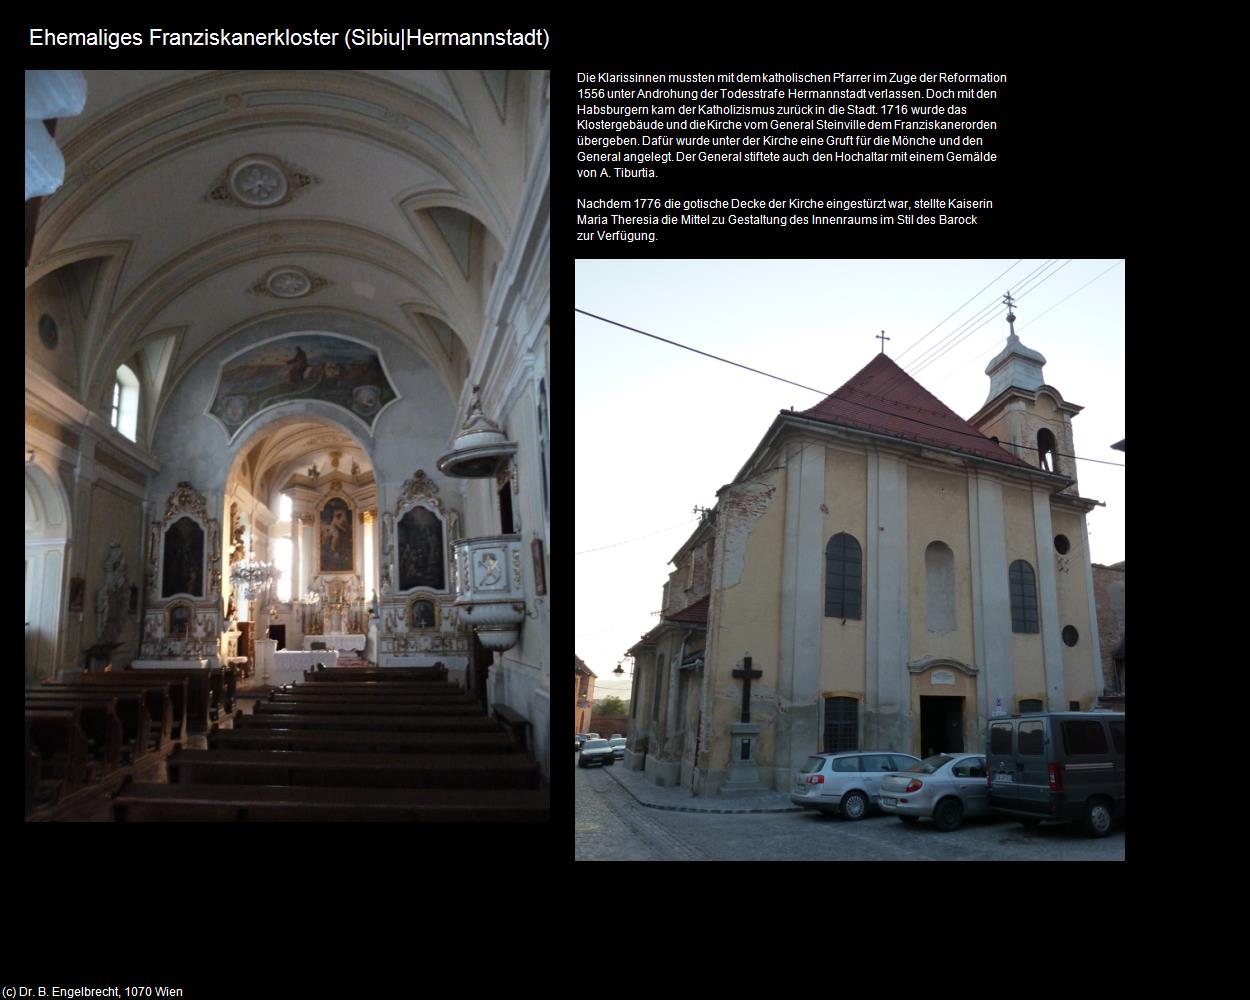 Ehem. Franziskanerkloster  (Sibiu|Hermannstadt) in RUMÄNIEN